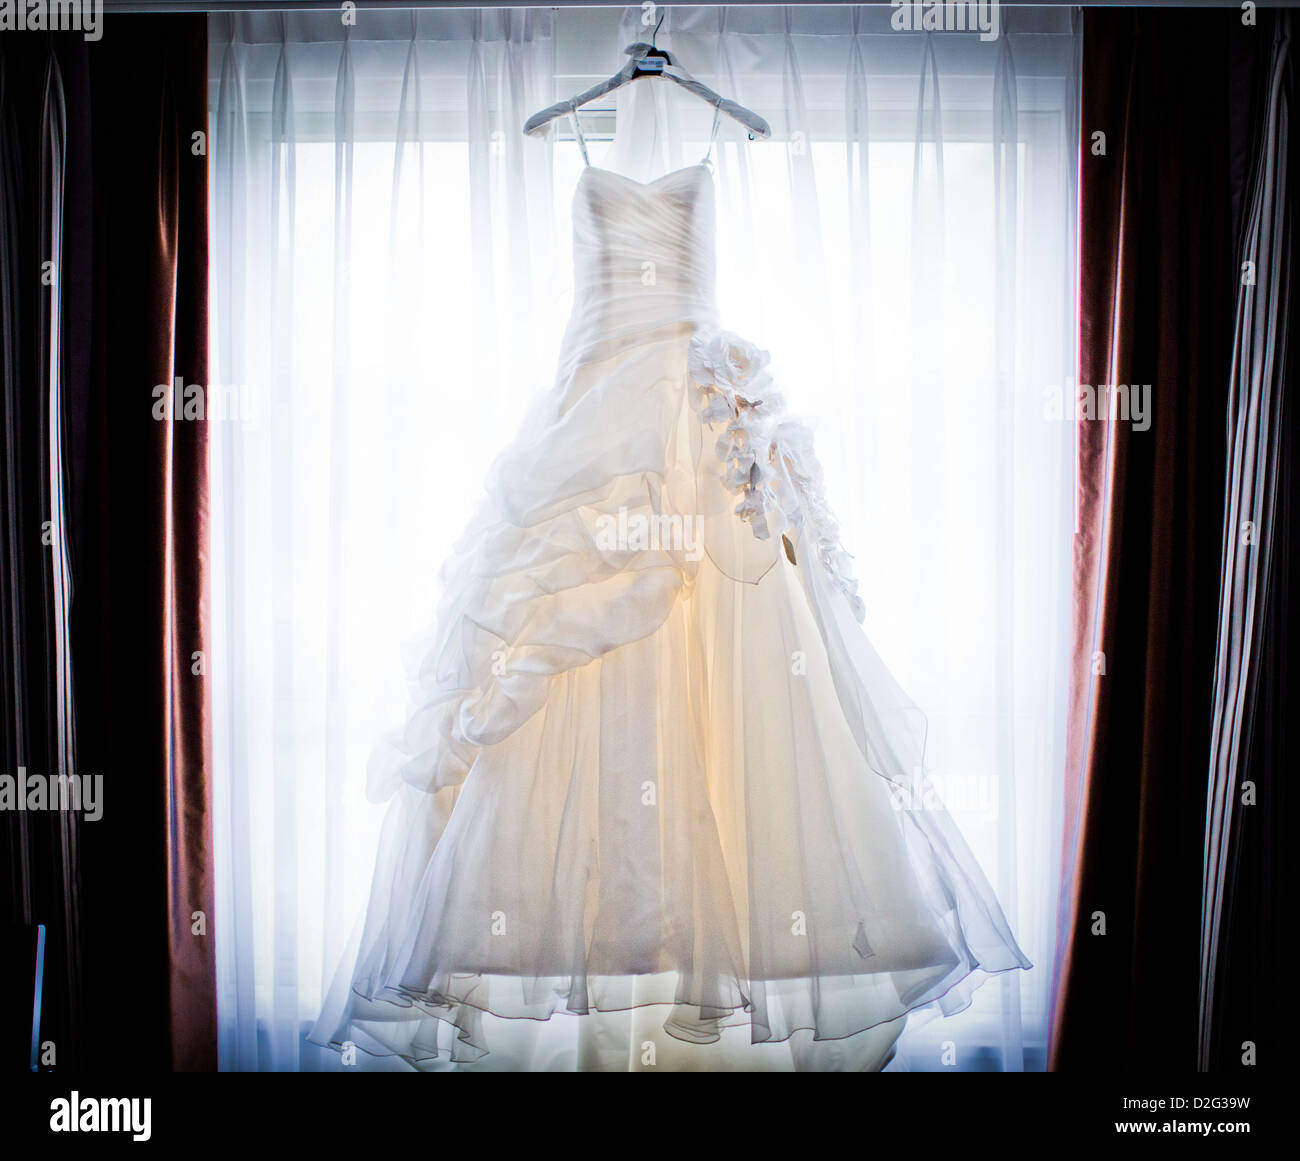 Foto von einem schönen weißen Brautkleid in einem Fenster aufhängen Stockfoto